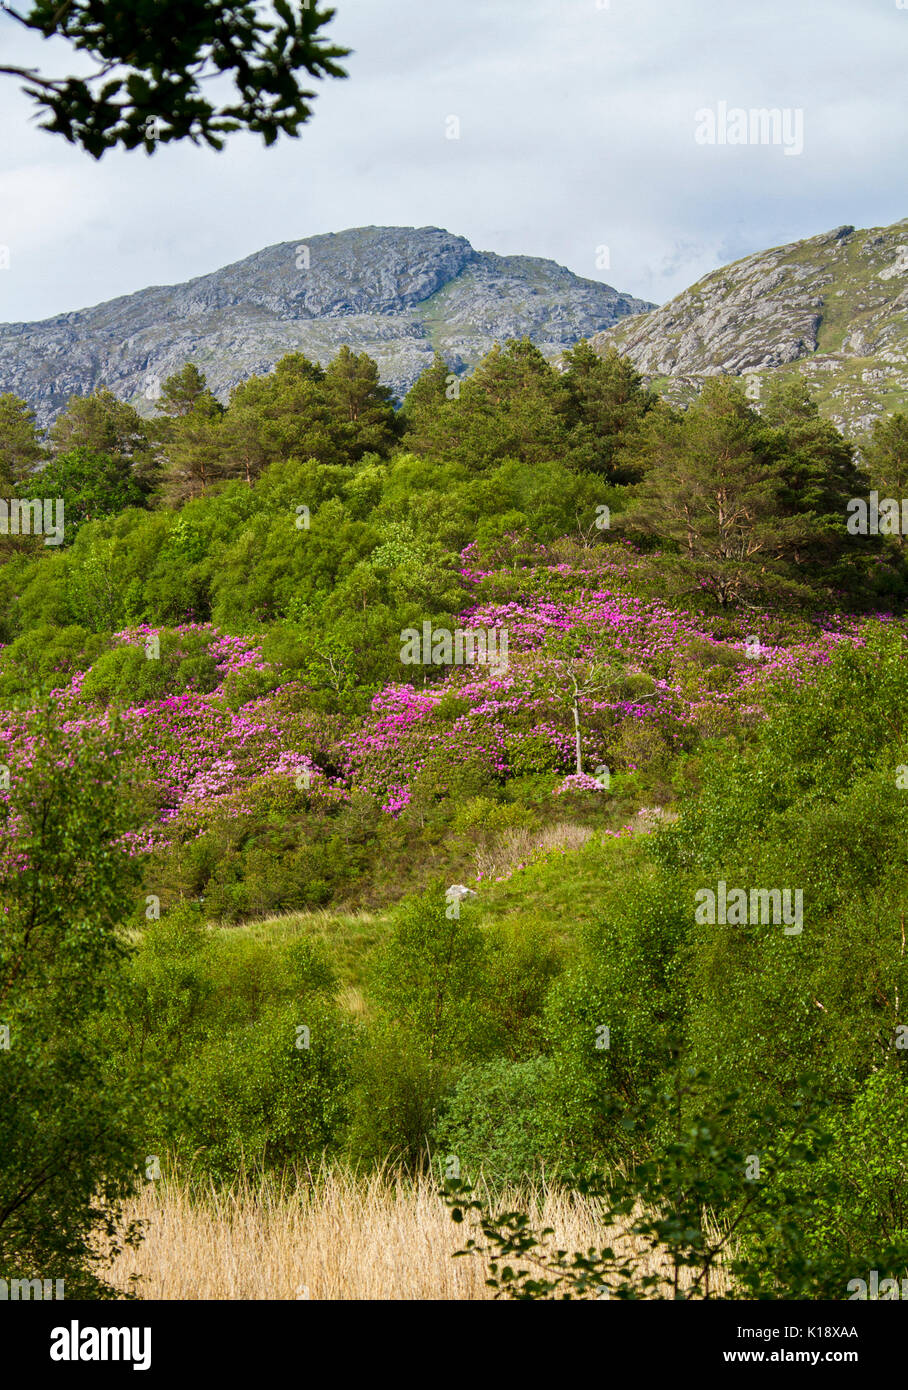 Paesaggio scozzese con masse di wild rododendri Rhododendron ponticum, invasivo specie infestanti, fioritura con fioriture di magenta sulla collina rurale Foto Stock